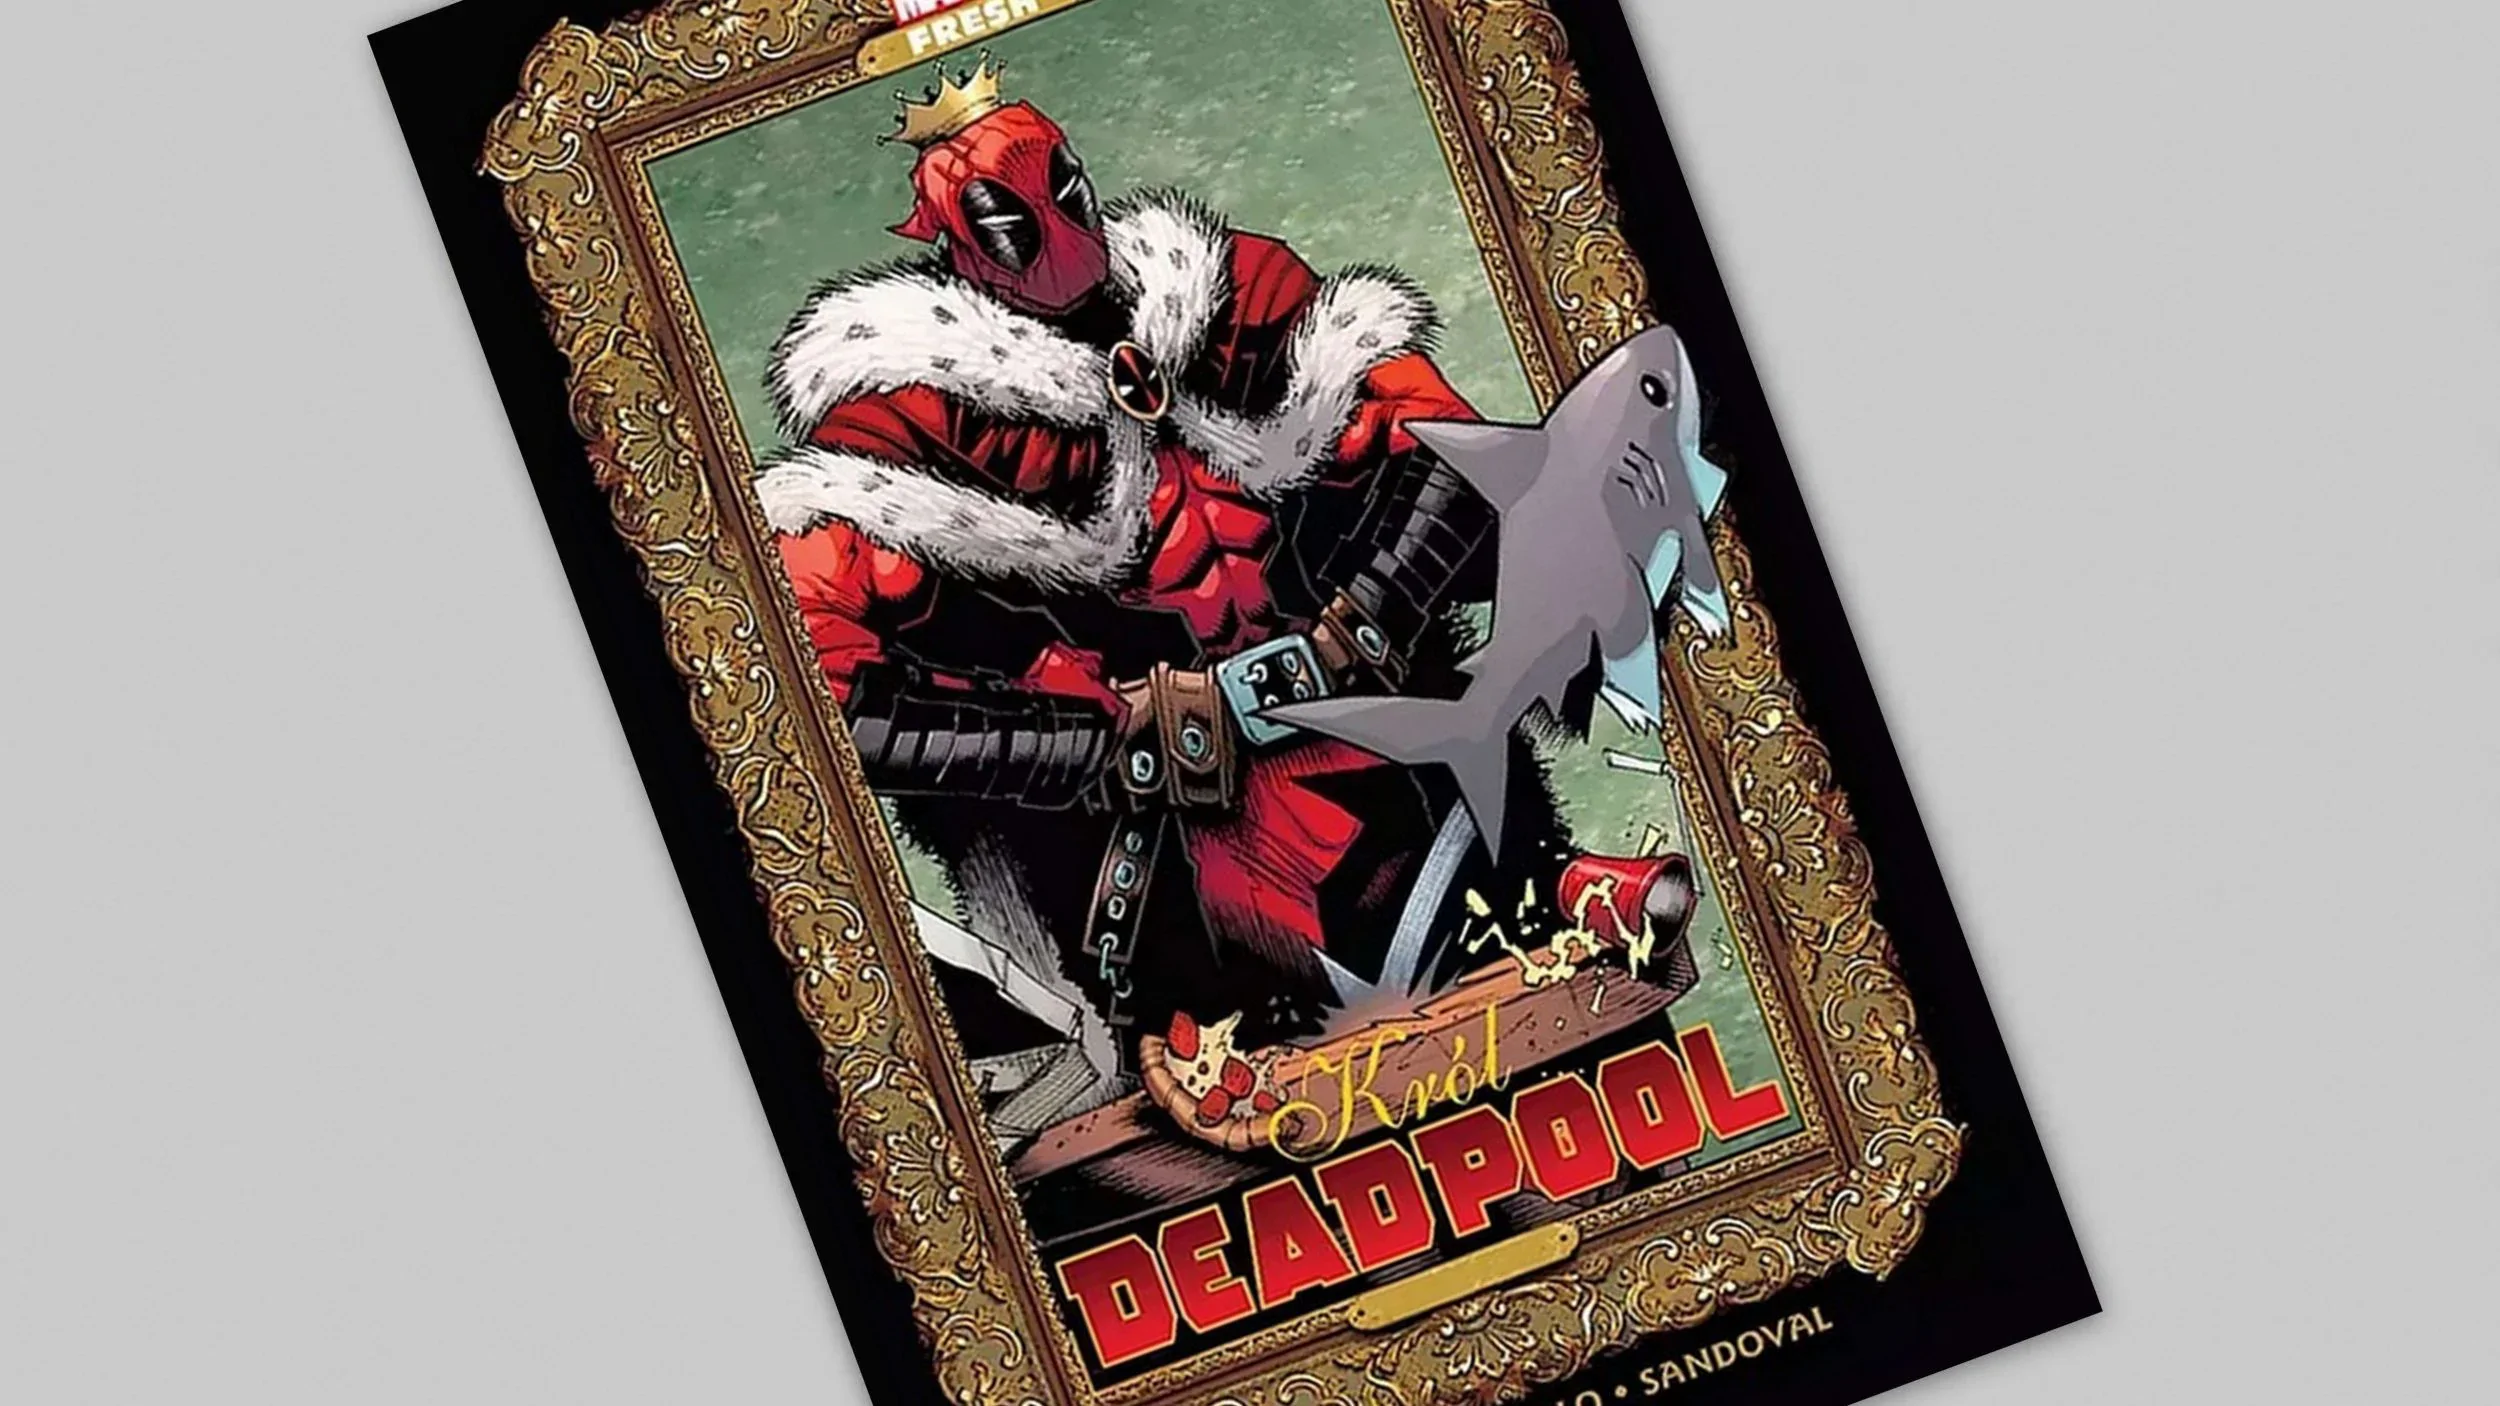 Król Deadpool - recenzja komiksu